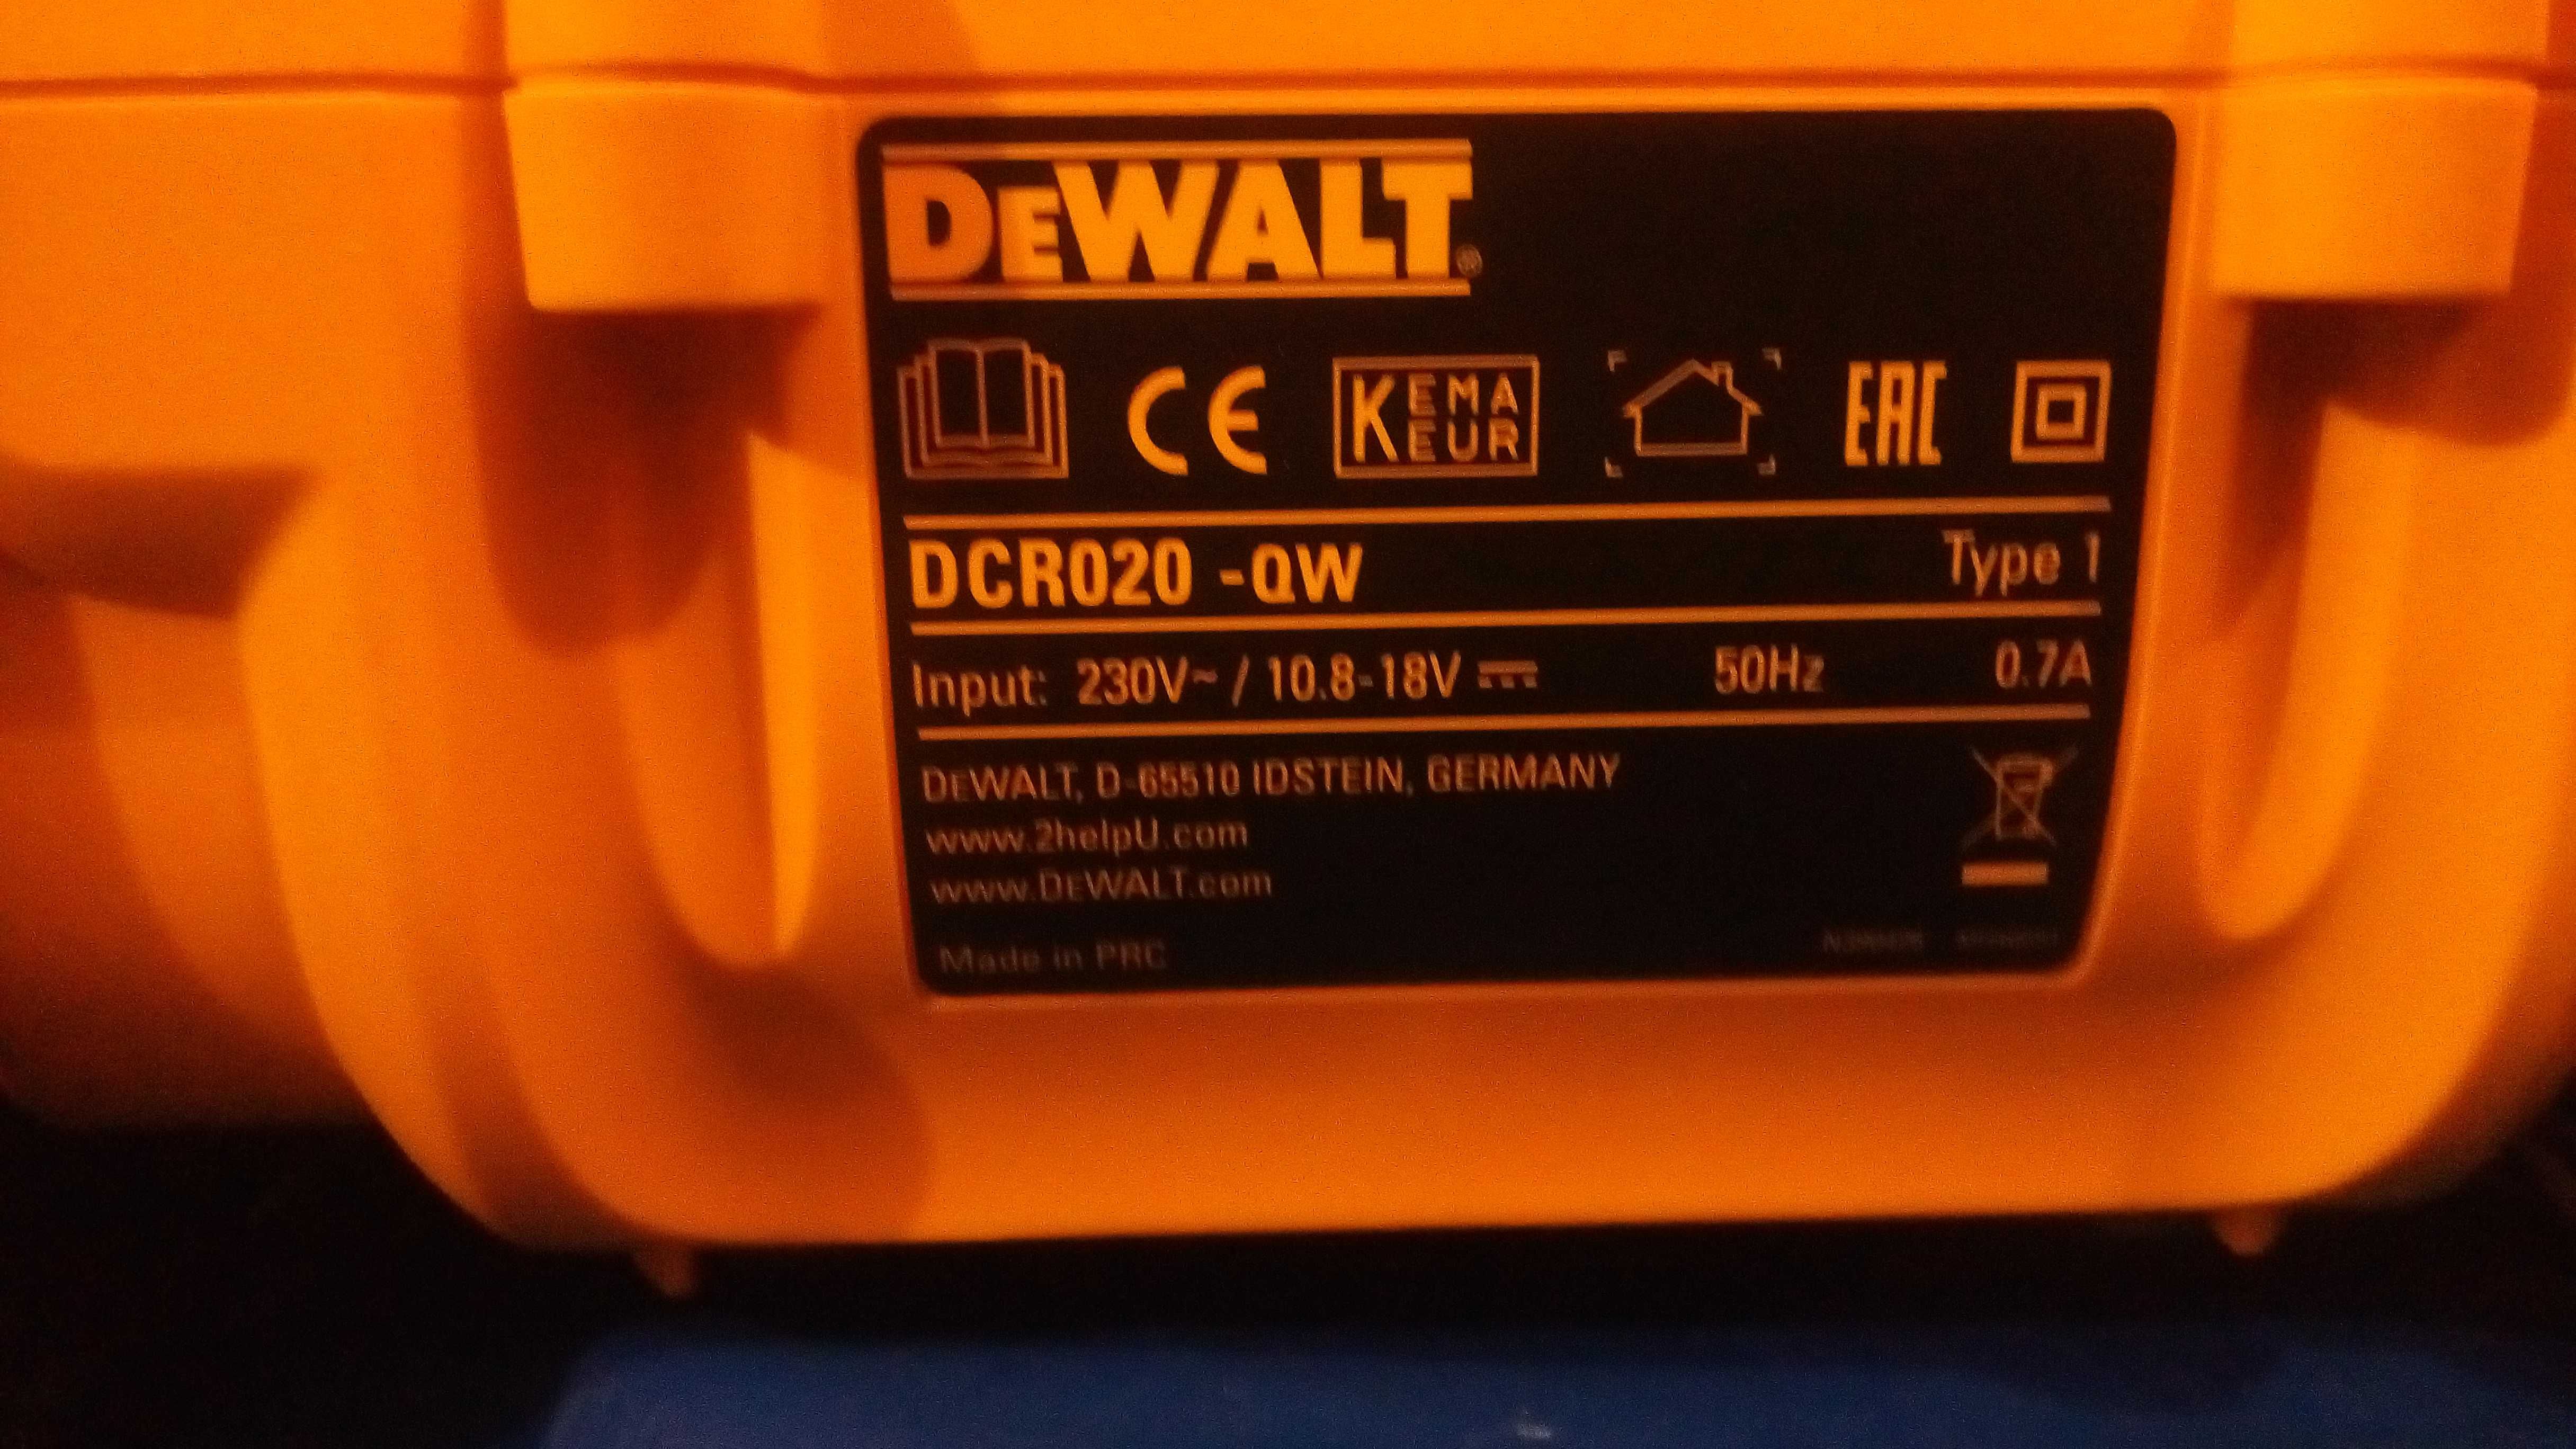 Dewalt dcr020-qw зарядное устройство радиоприемник